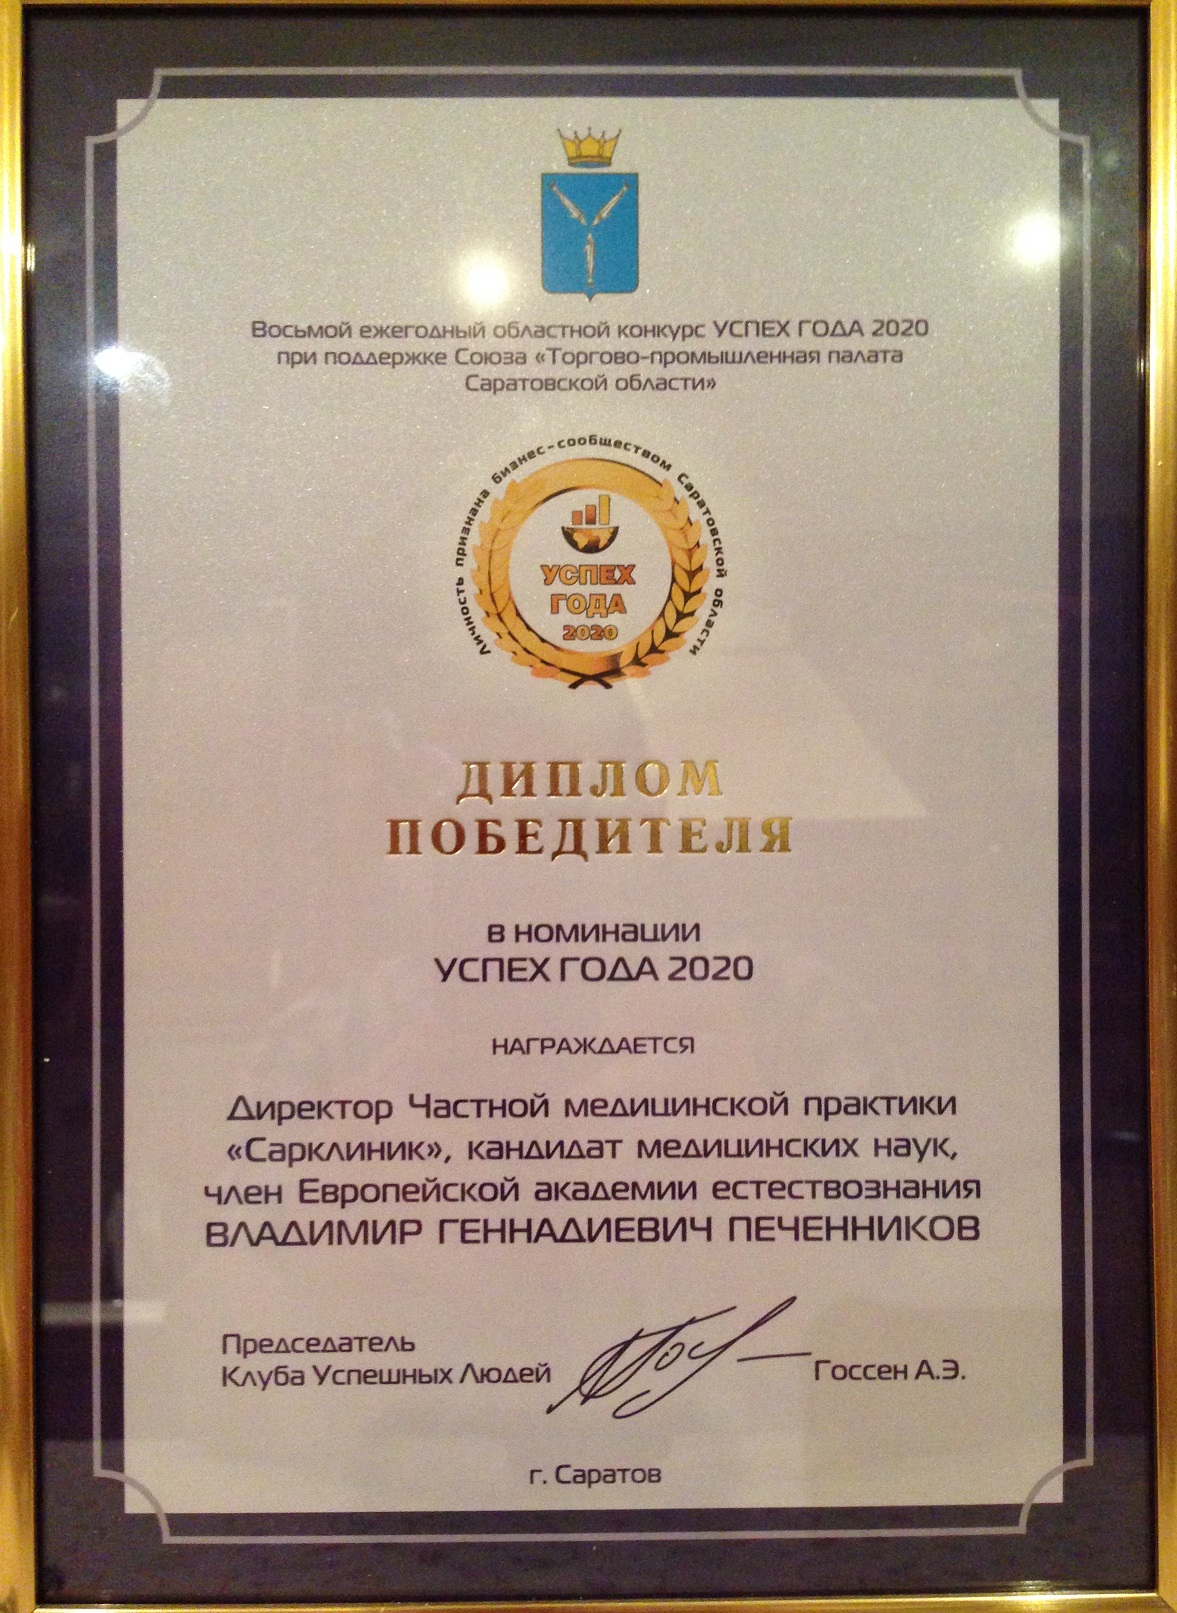 Печенников В. Г. - победитель премии "Успех года 2020"